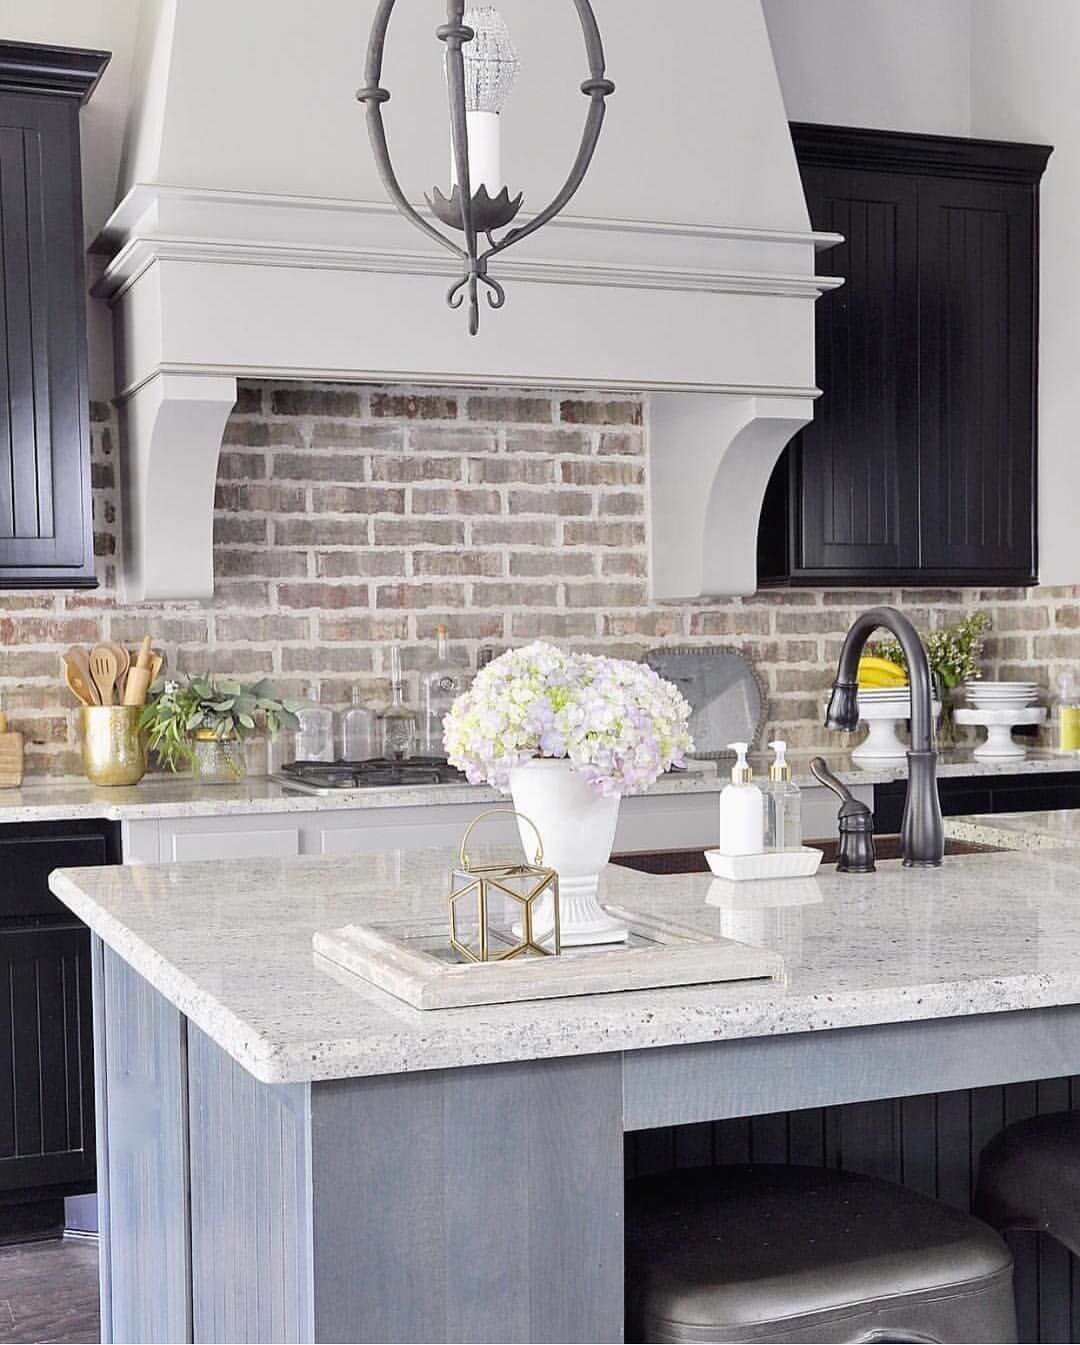 Beautiful kitchen pendant light 